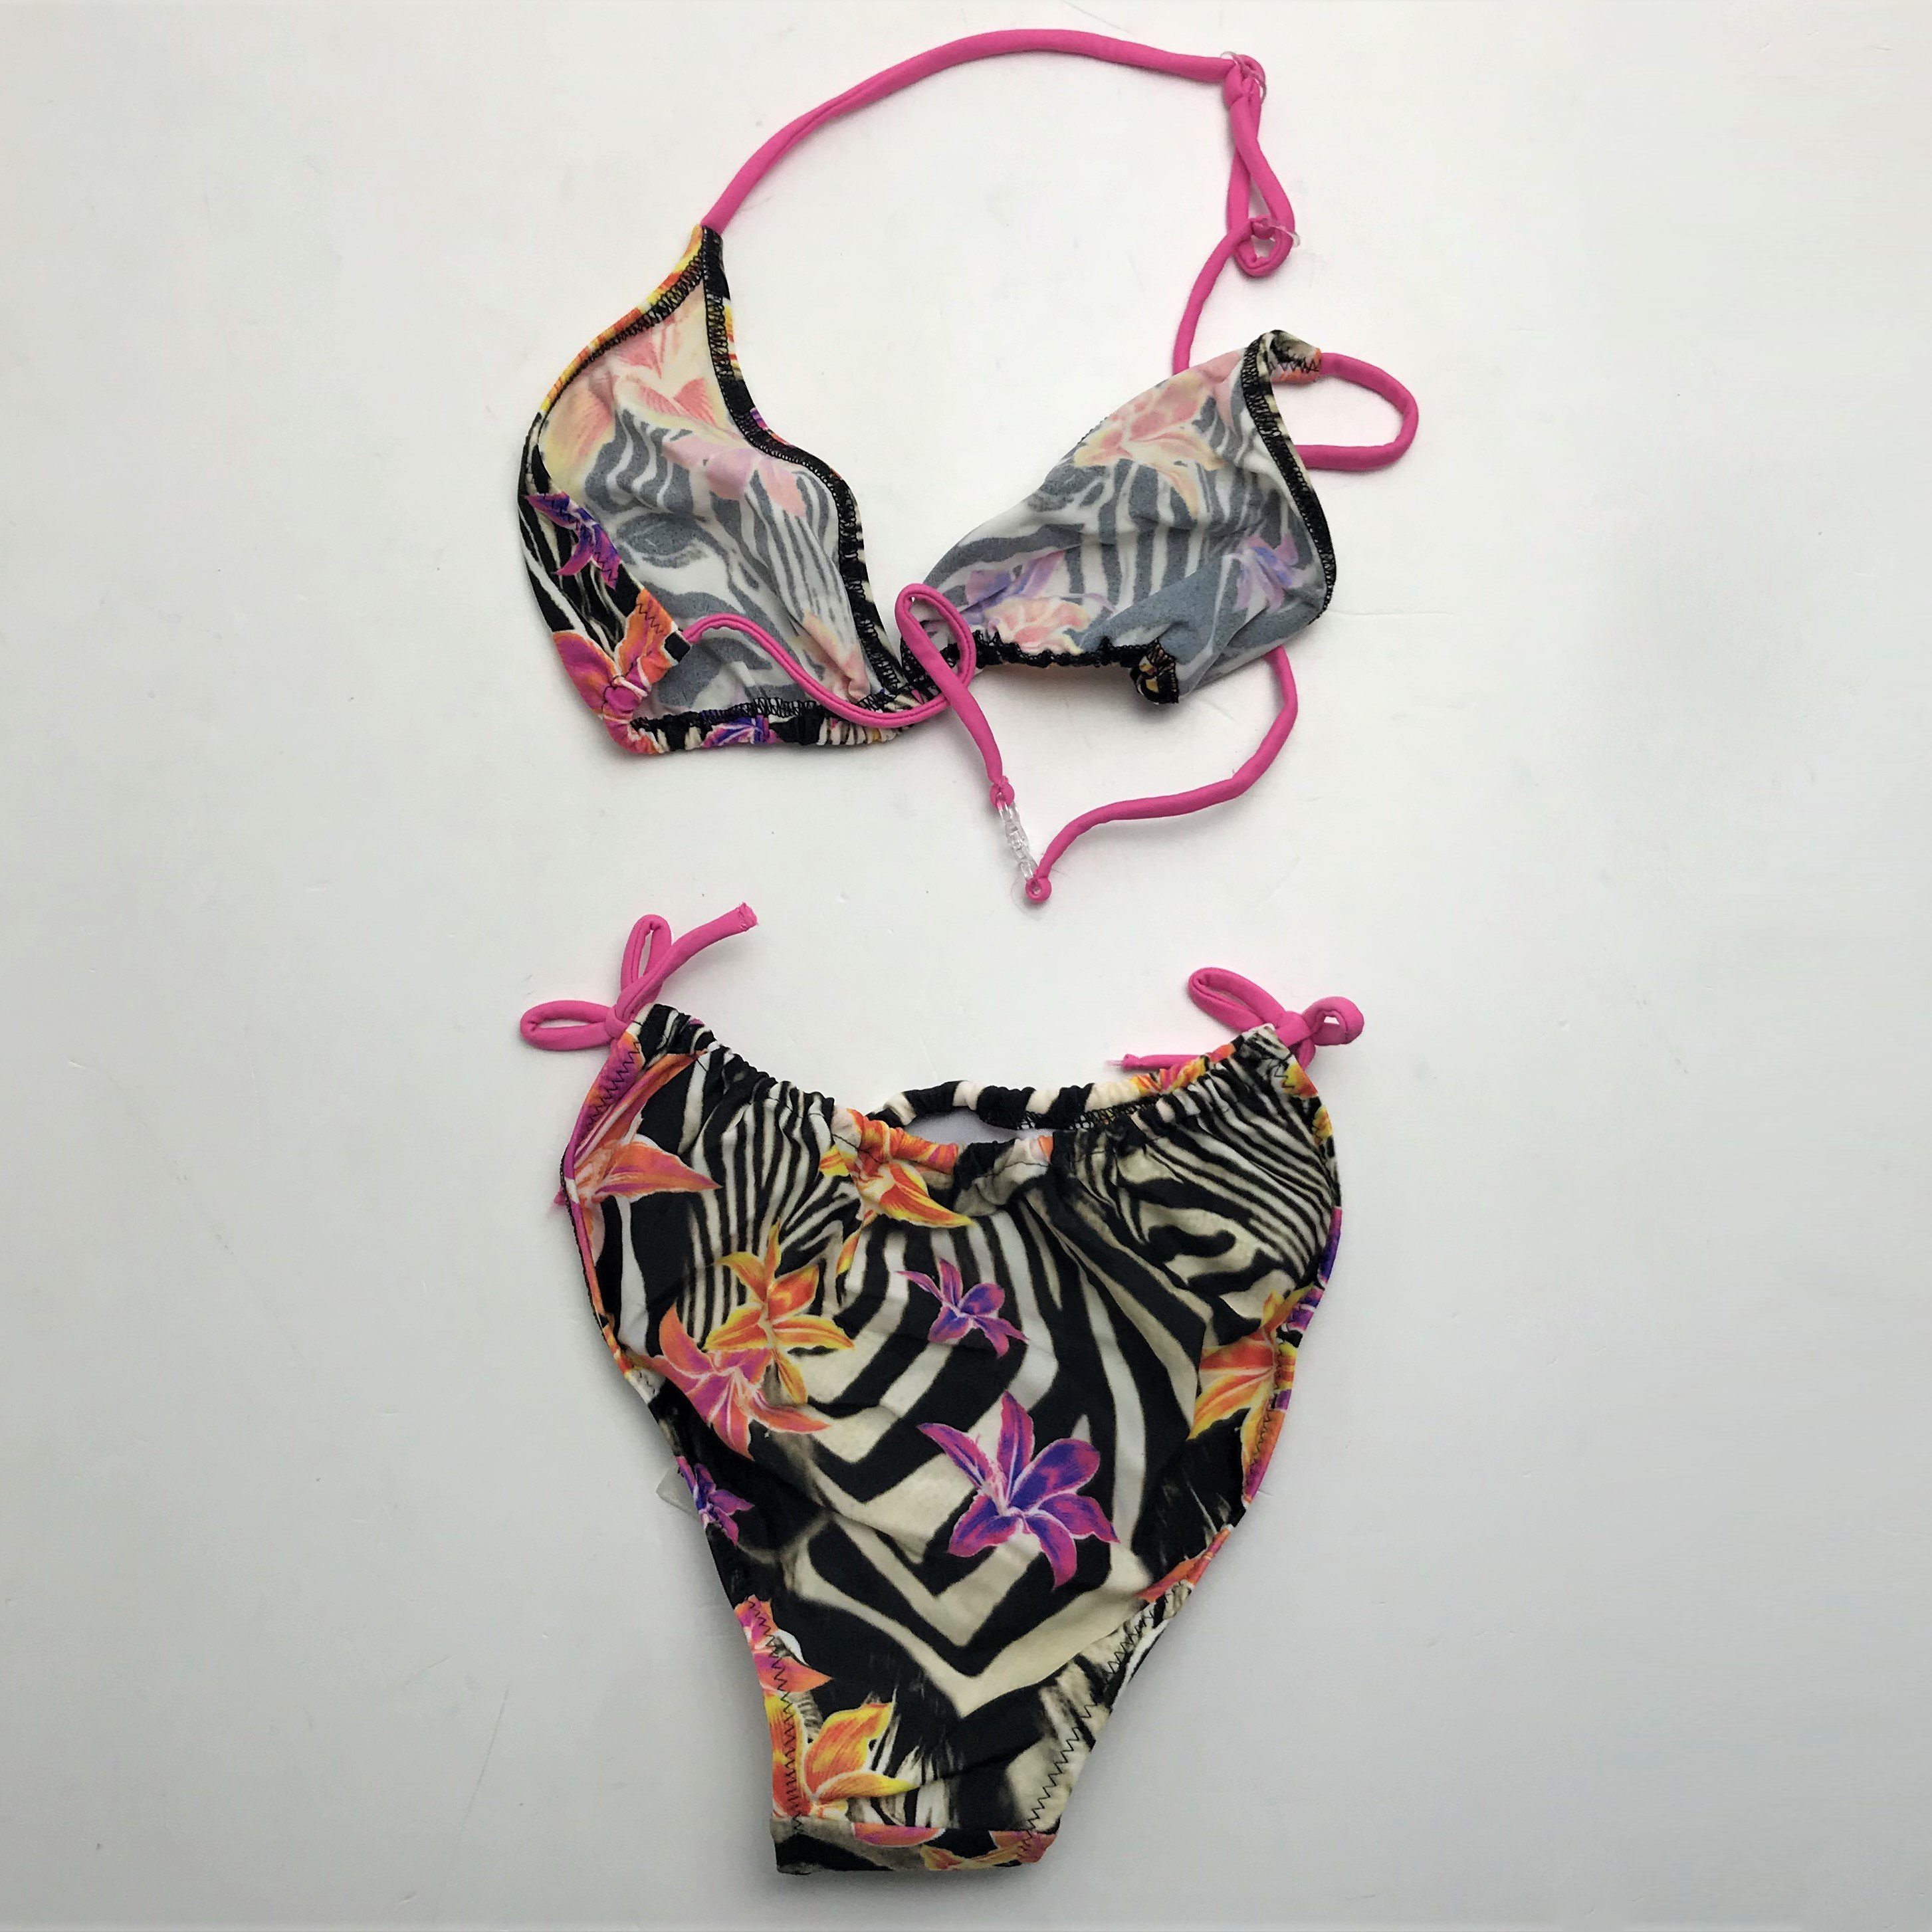 Joblot of 7 Diesel Girl Exotic Zebra Flower Swimming Bikinis Size 8-16